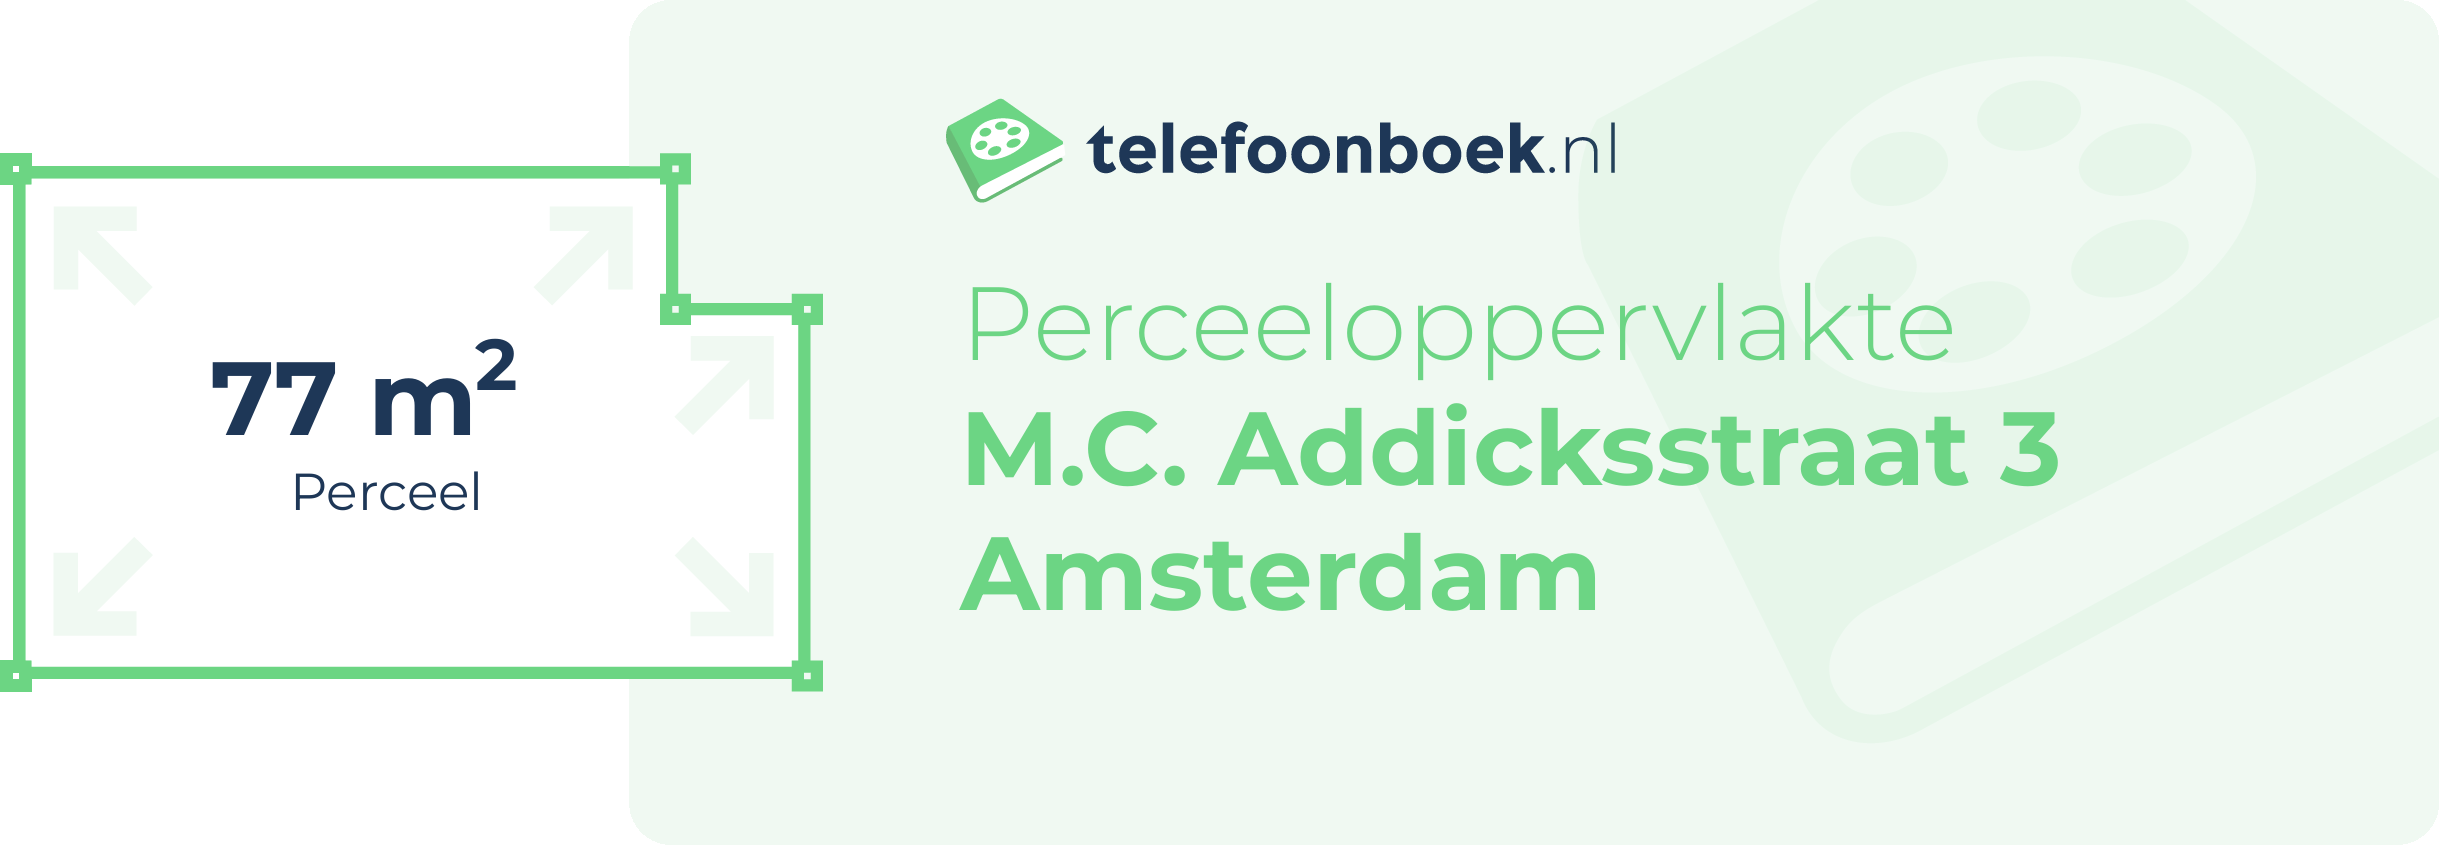 Perceeloppervlakte M.C. Addicksstraat 3 Amsterdam